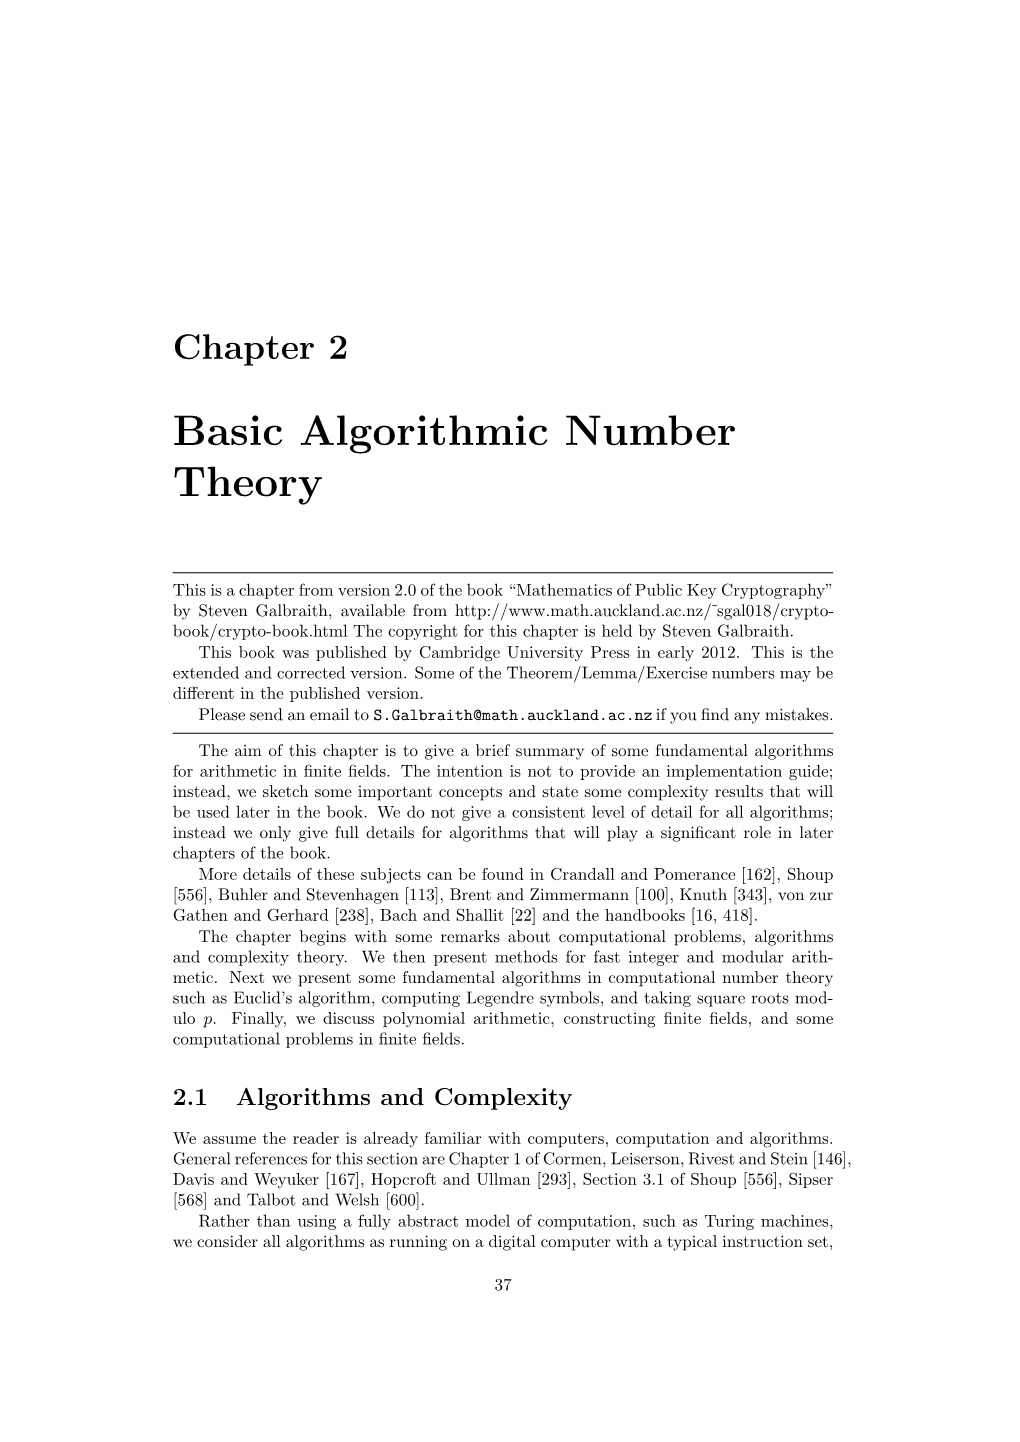 Basic Algorithmic Number Theory